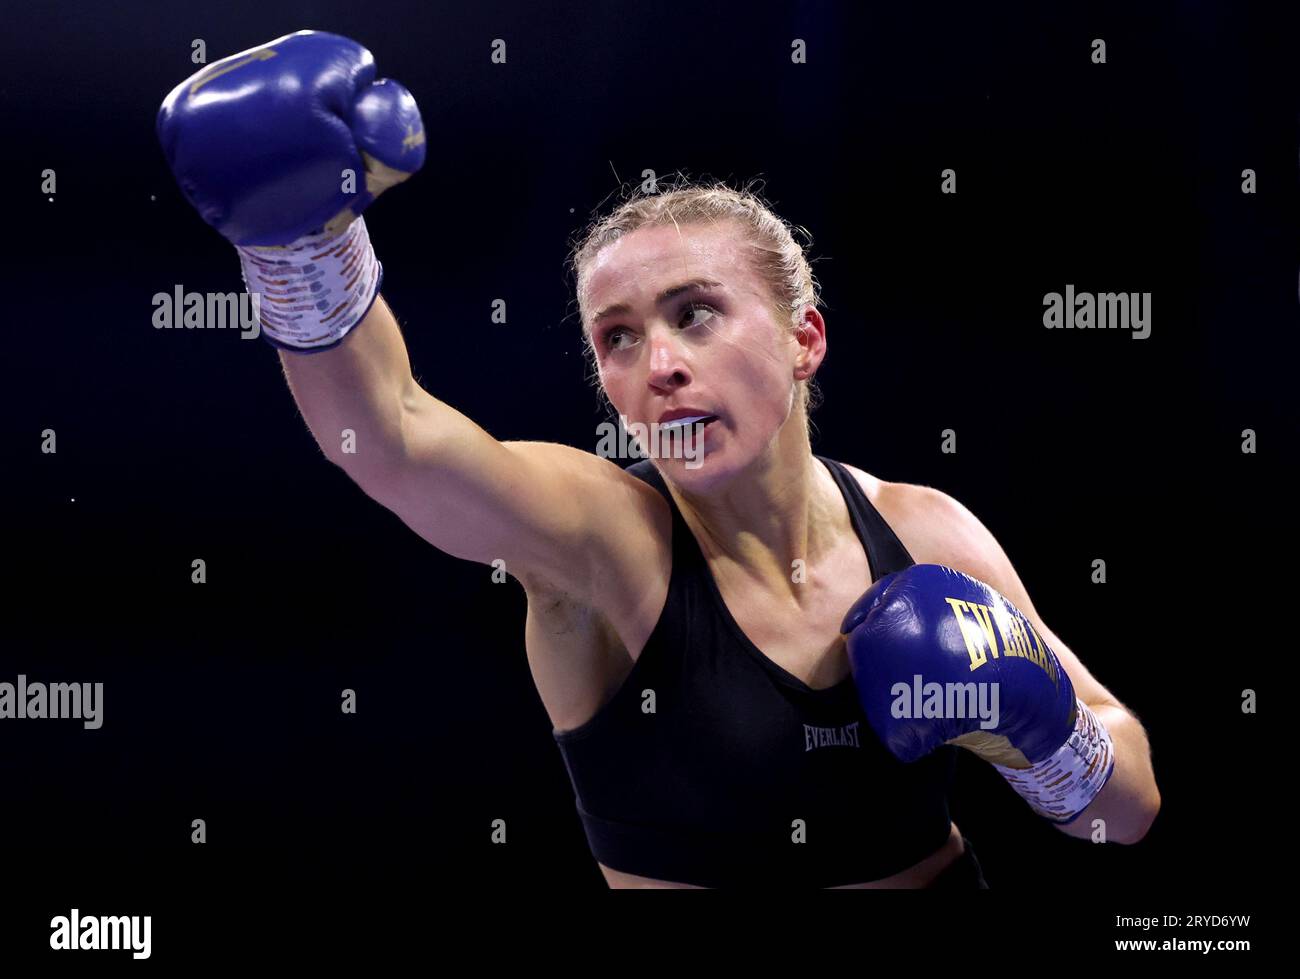 Rhiannon Dixon in Aktion beim Women's Lightweight Match gegen Katherina Thanderz in der OVO Arena Wembley, London. Bilddatum: Samstag, 30. September 2023. Stockfoto